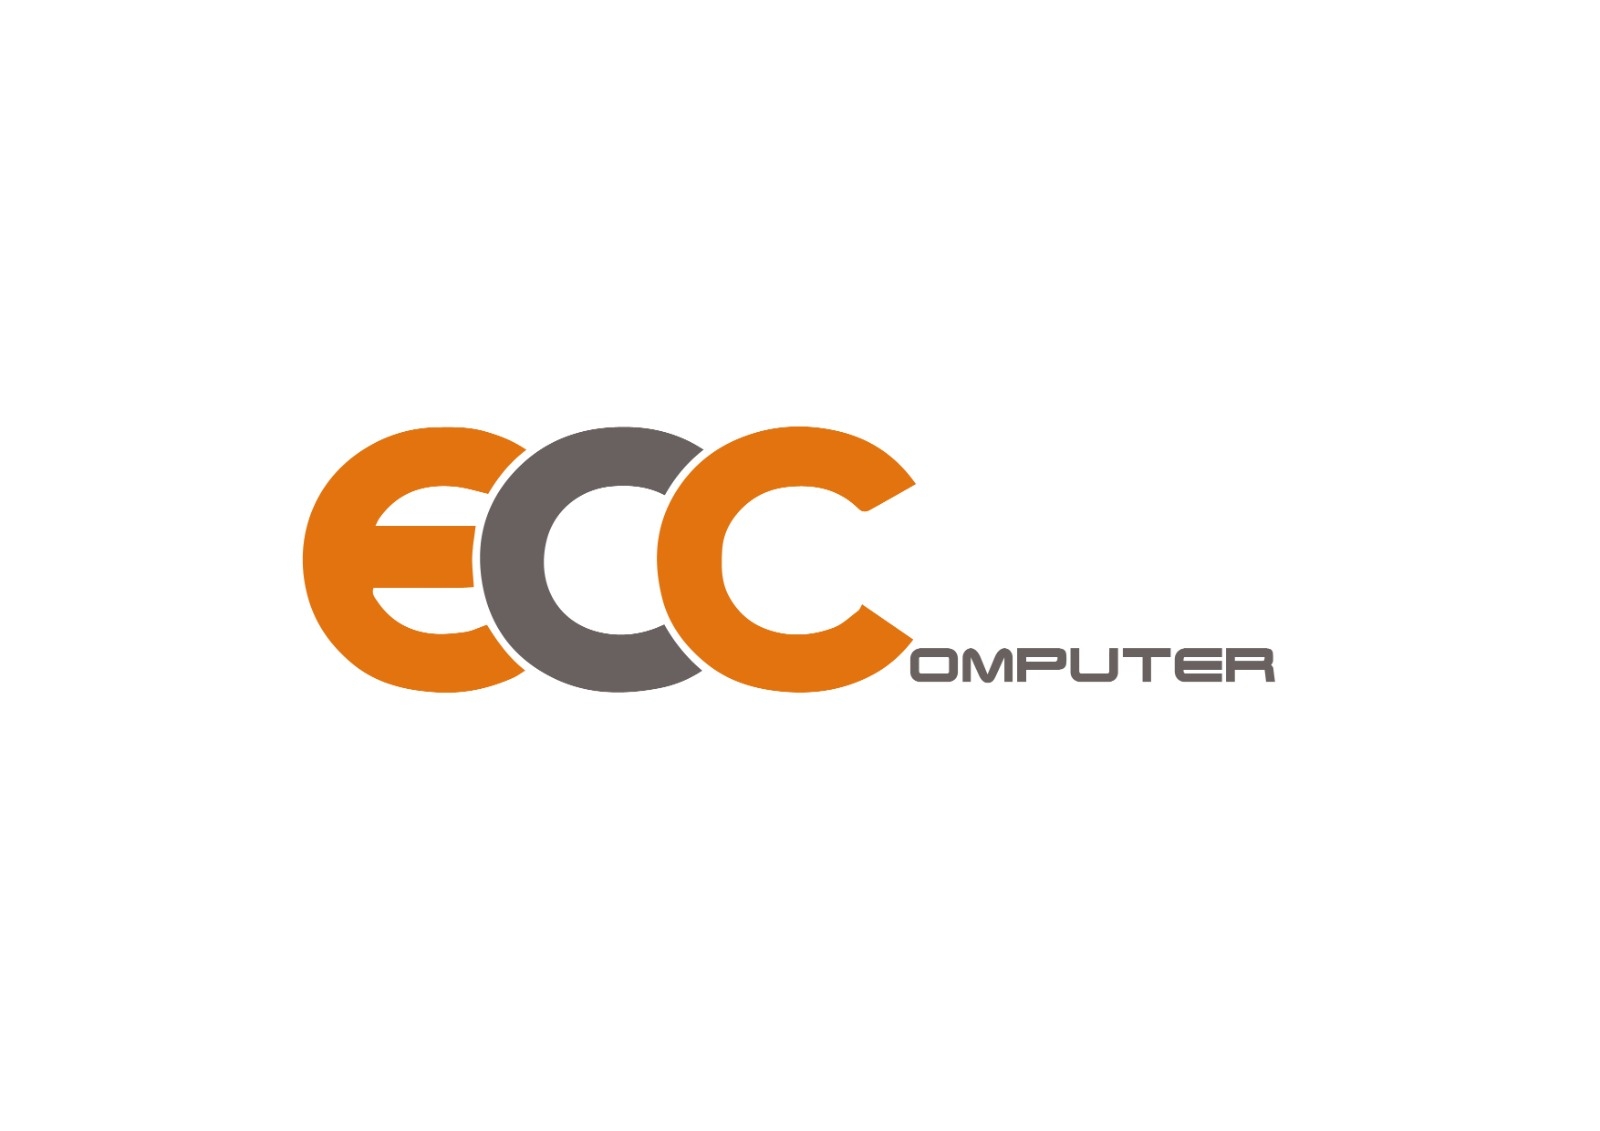 EC Computer